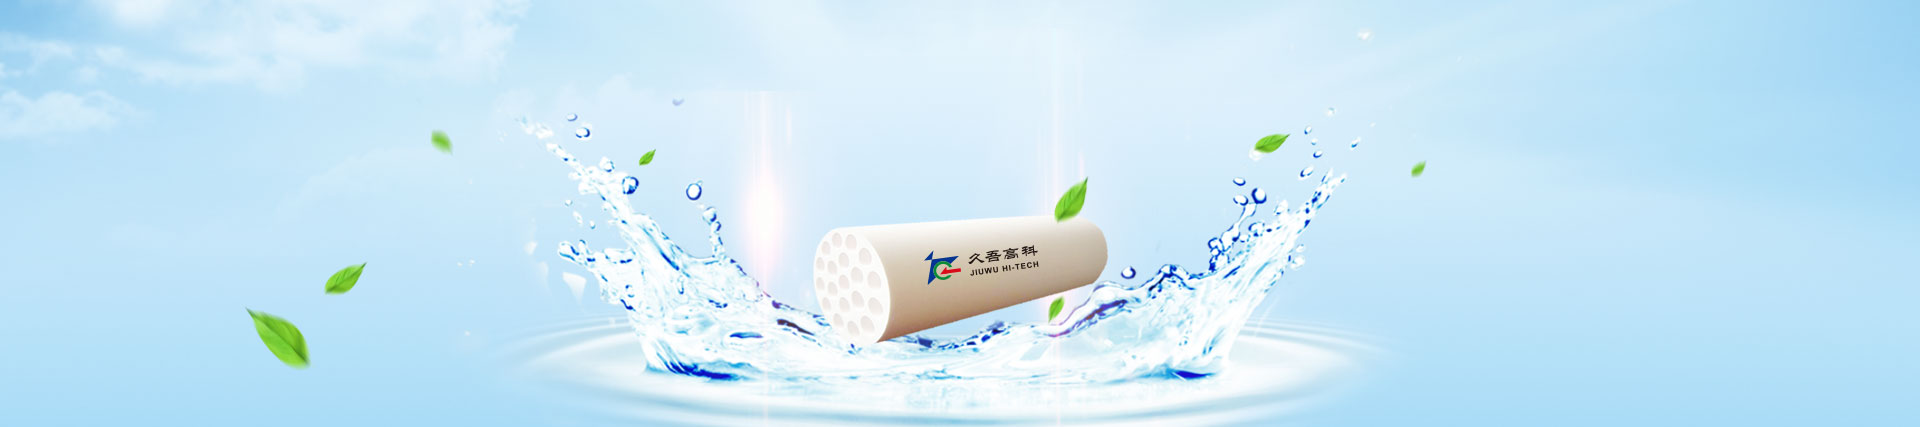 JIUWU HI-TECH: The Leading Brand of Chinese Ceramic Membrane